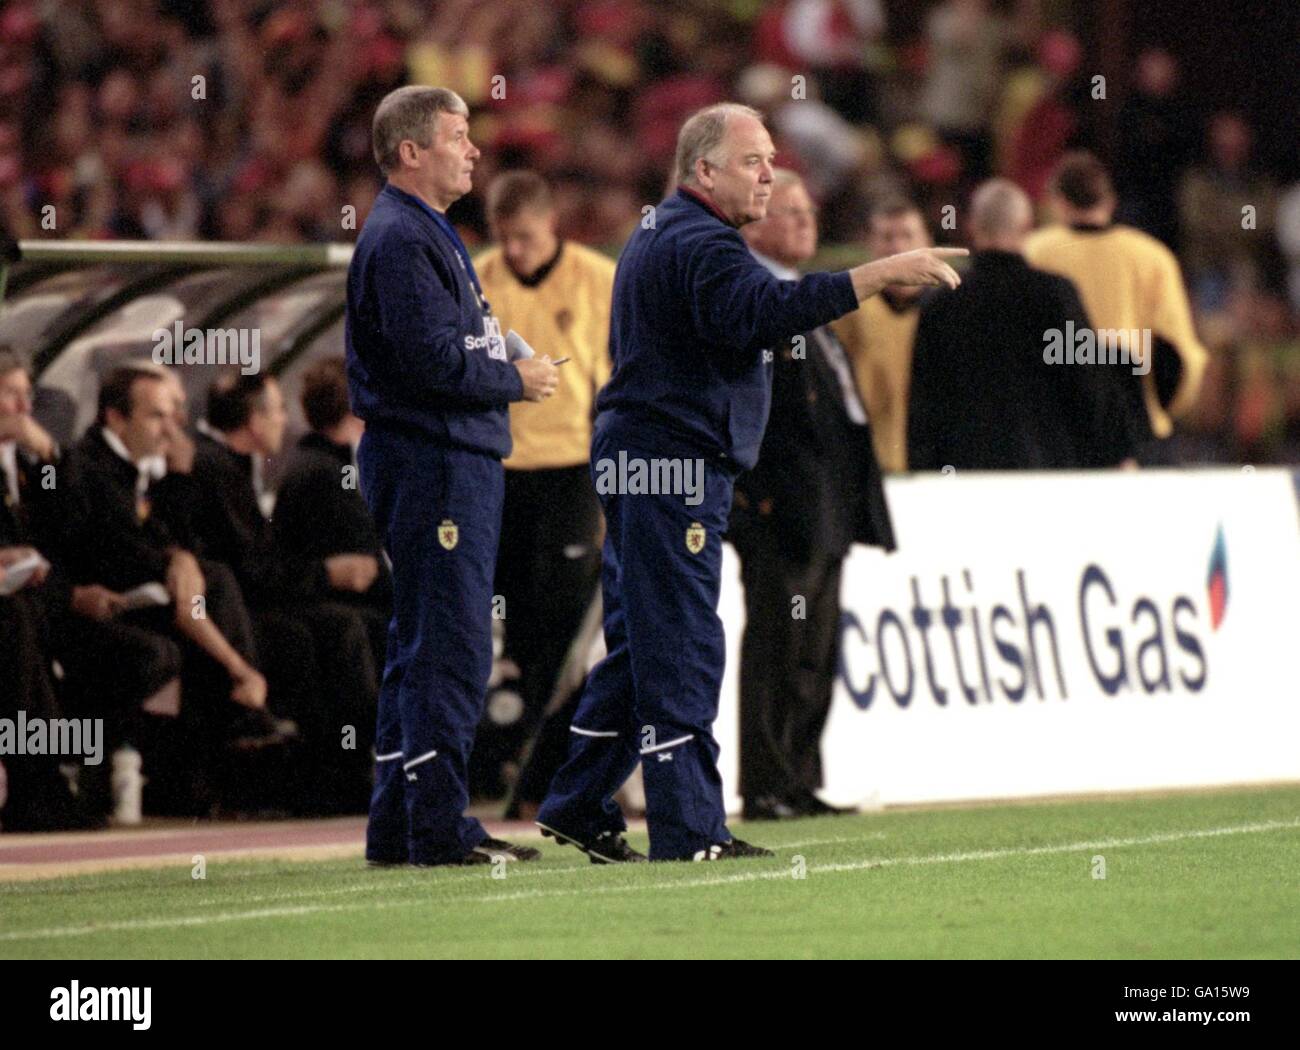 Calcio - Coppa del mondo 2002 Qualifier - Gruppo sei - Belgio / Scozia. Craig Brown (r) e il suo assistente Archie Knox (l) cercano di avere un'influenza dalla linea di contatto Foto Stock